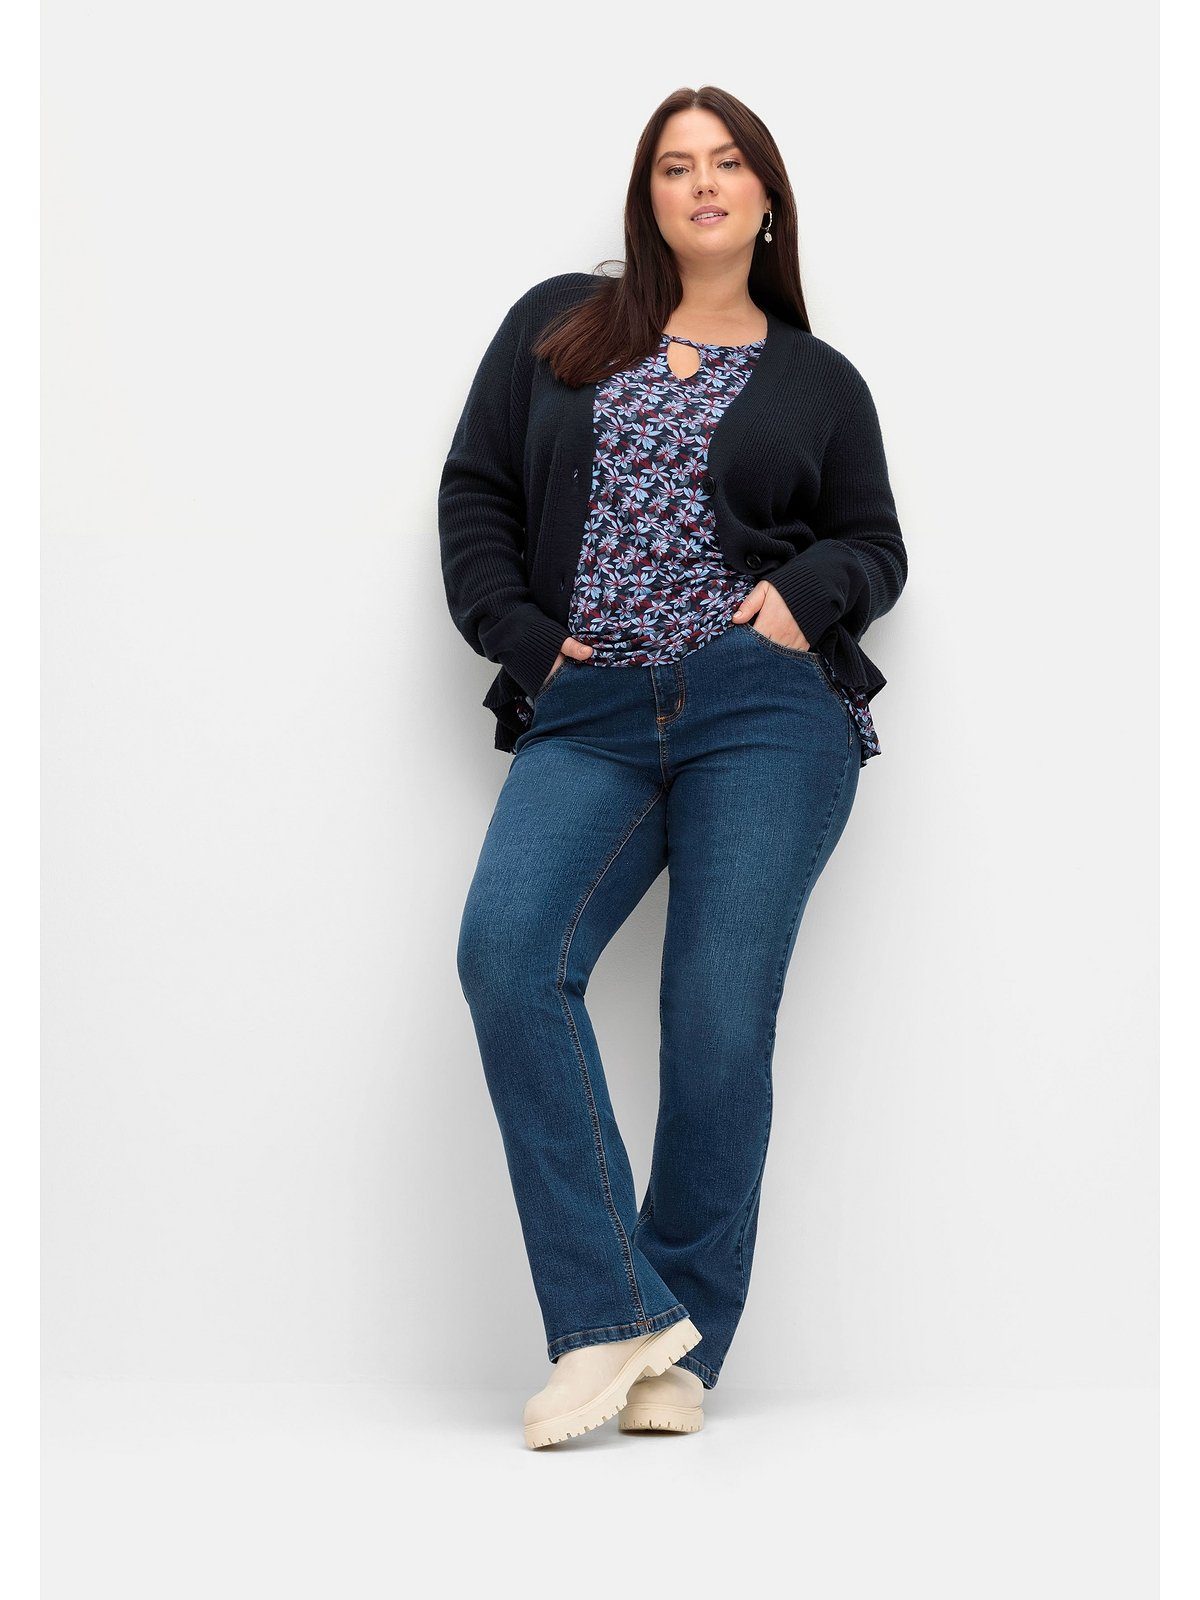 Sheego Bootcut-Jeans blue viel SUSANNE Beinen und Große schmalen ideal Größen Bauch dark Denim bei